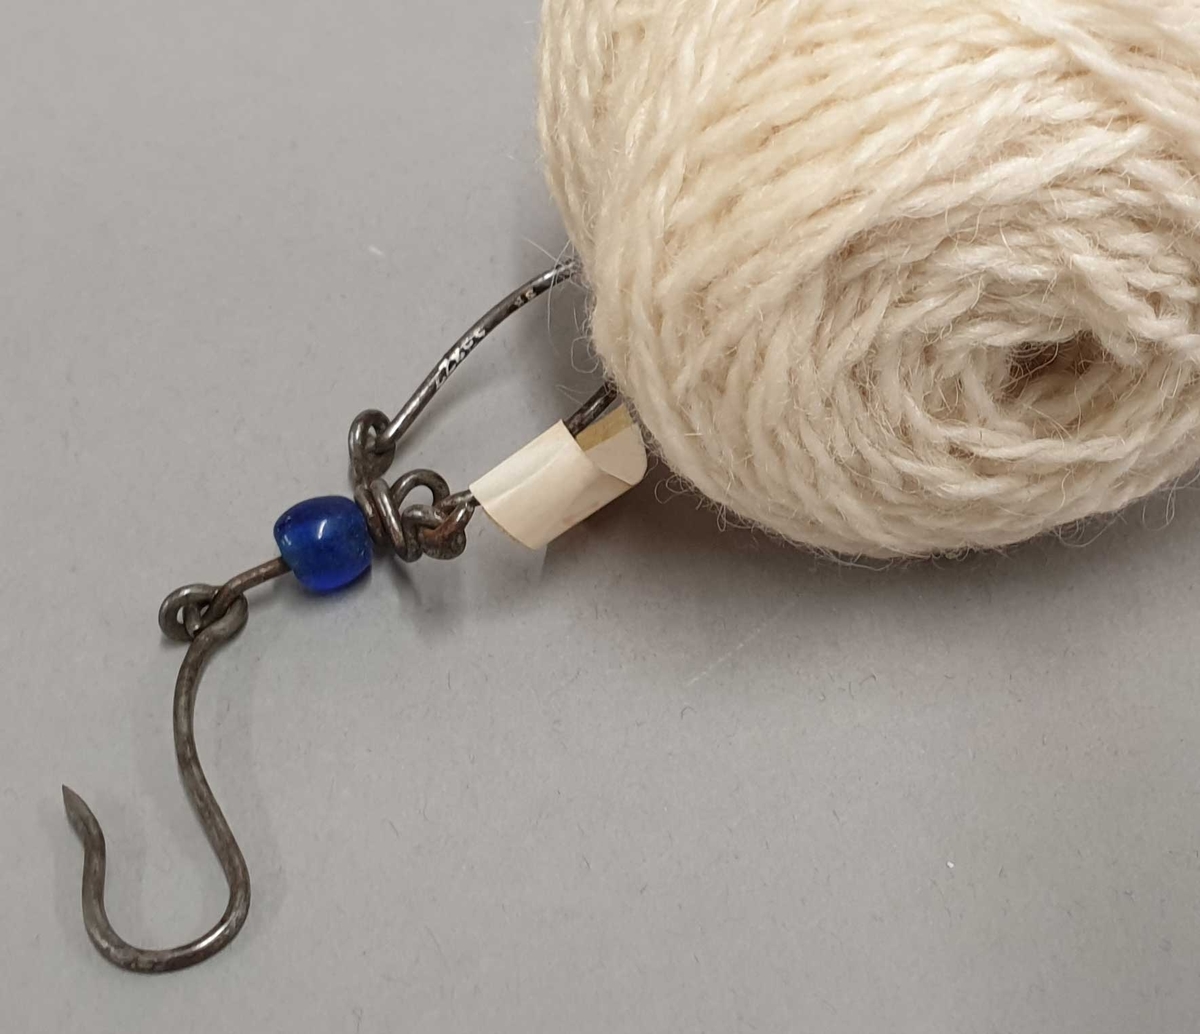 Nøstekrok som består av en krok og en bøyle som kan åpnes forbundet med et mellomstykke laget av tråd. På mellomtråden er tredd innpå en liten blå glassperle. Krok og bøyle kan dreie fritt rundt hverandre.